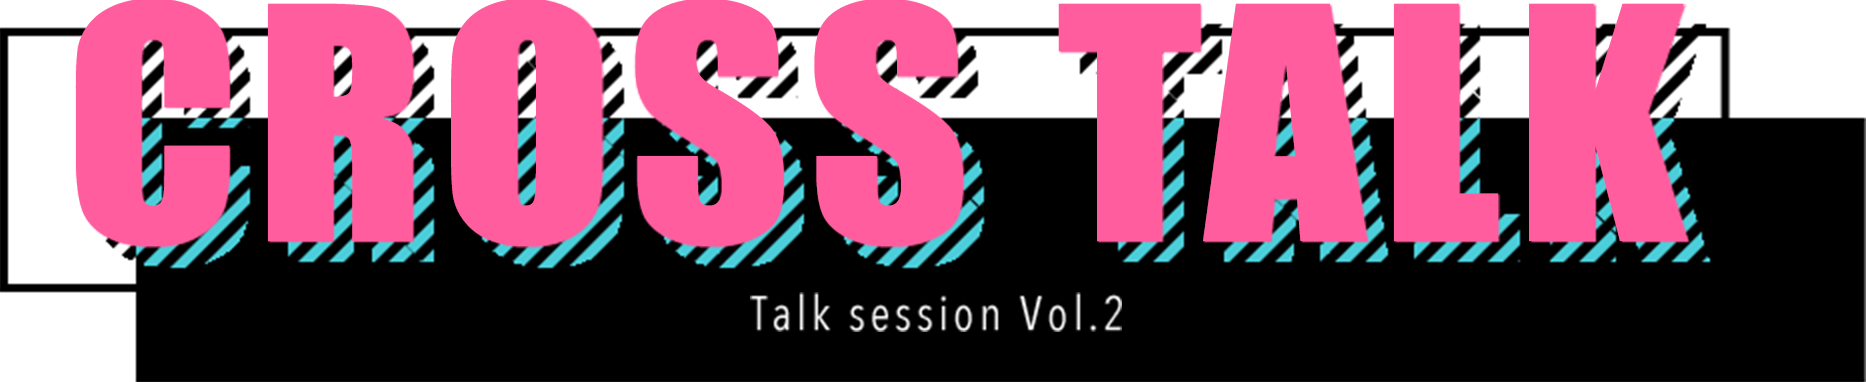 CROSS TALK Talk session Vol.2